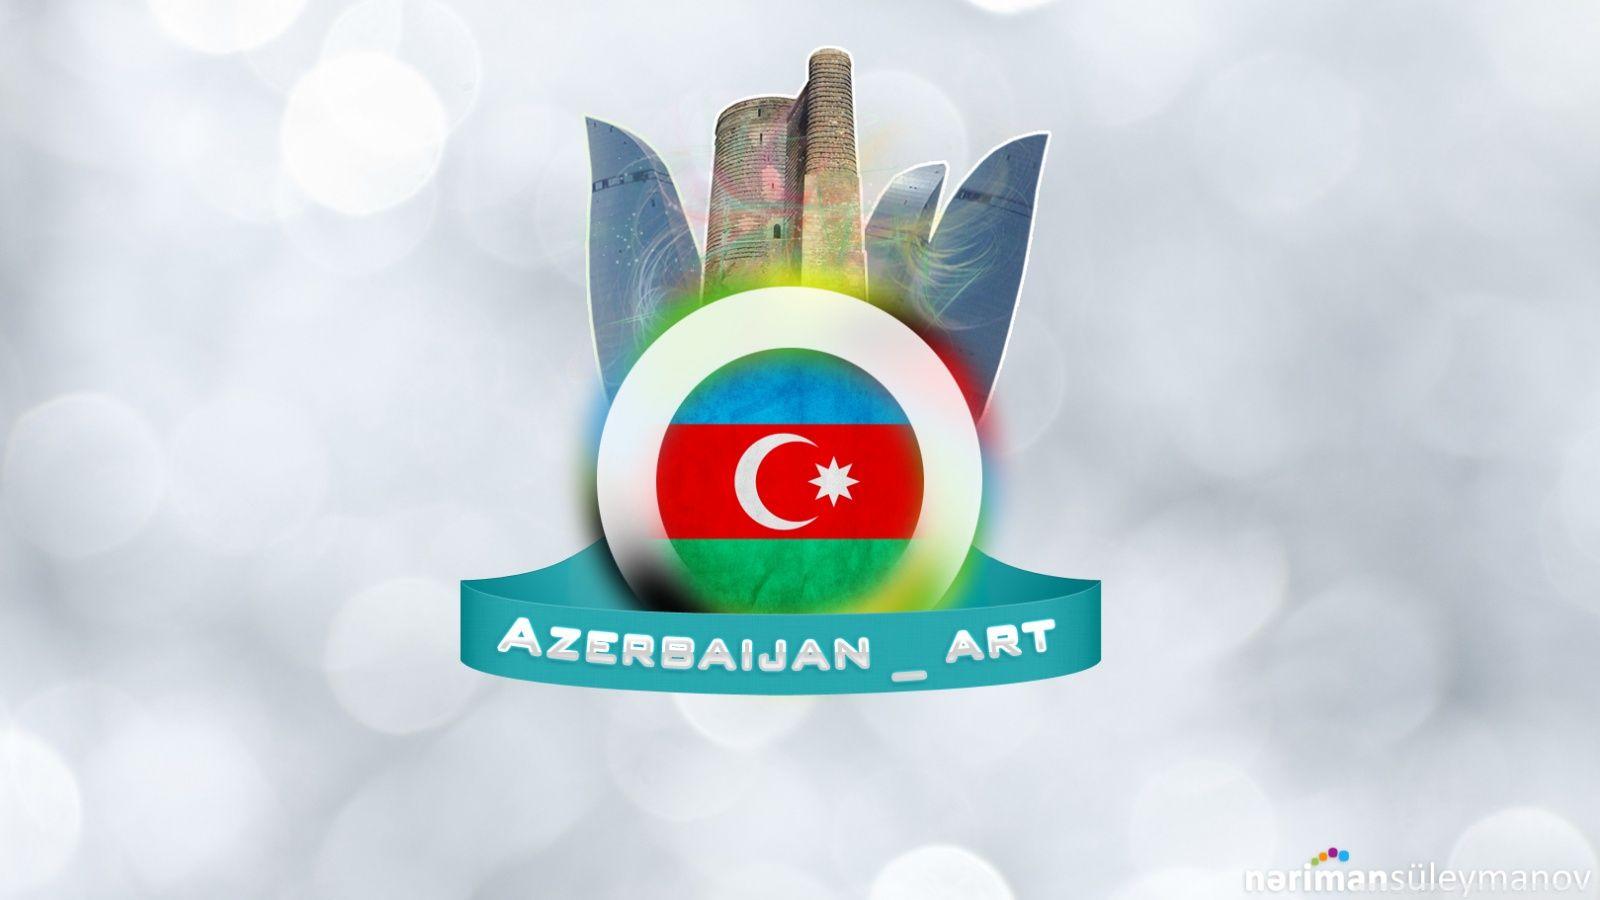 Azerbaijan_art HD desktop wallpaper, Widescreen, High Definition